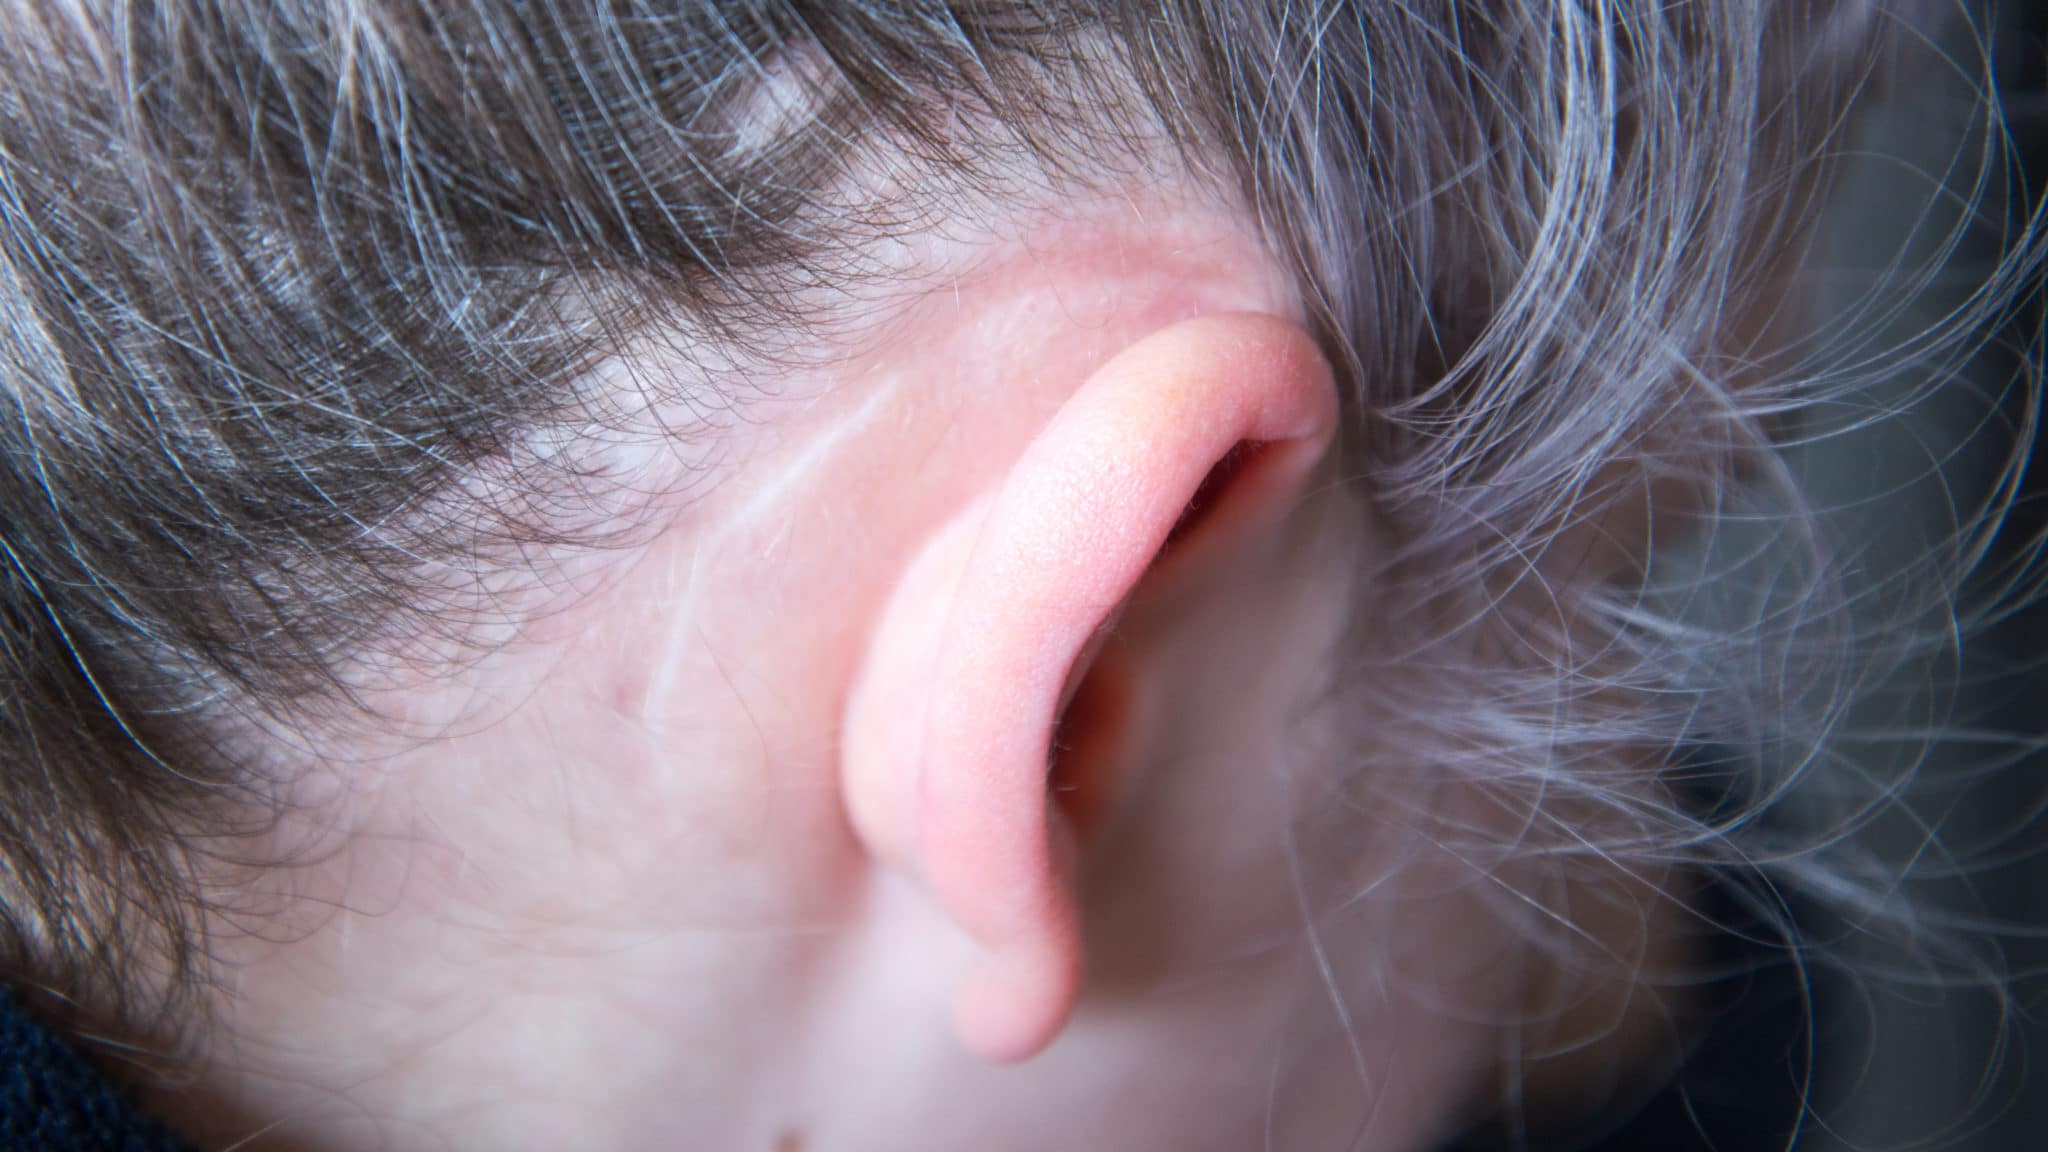 Operation scar behind ear